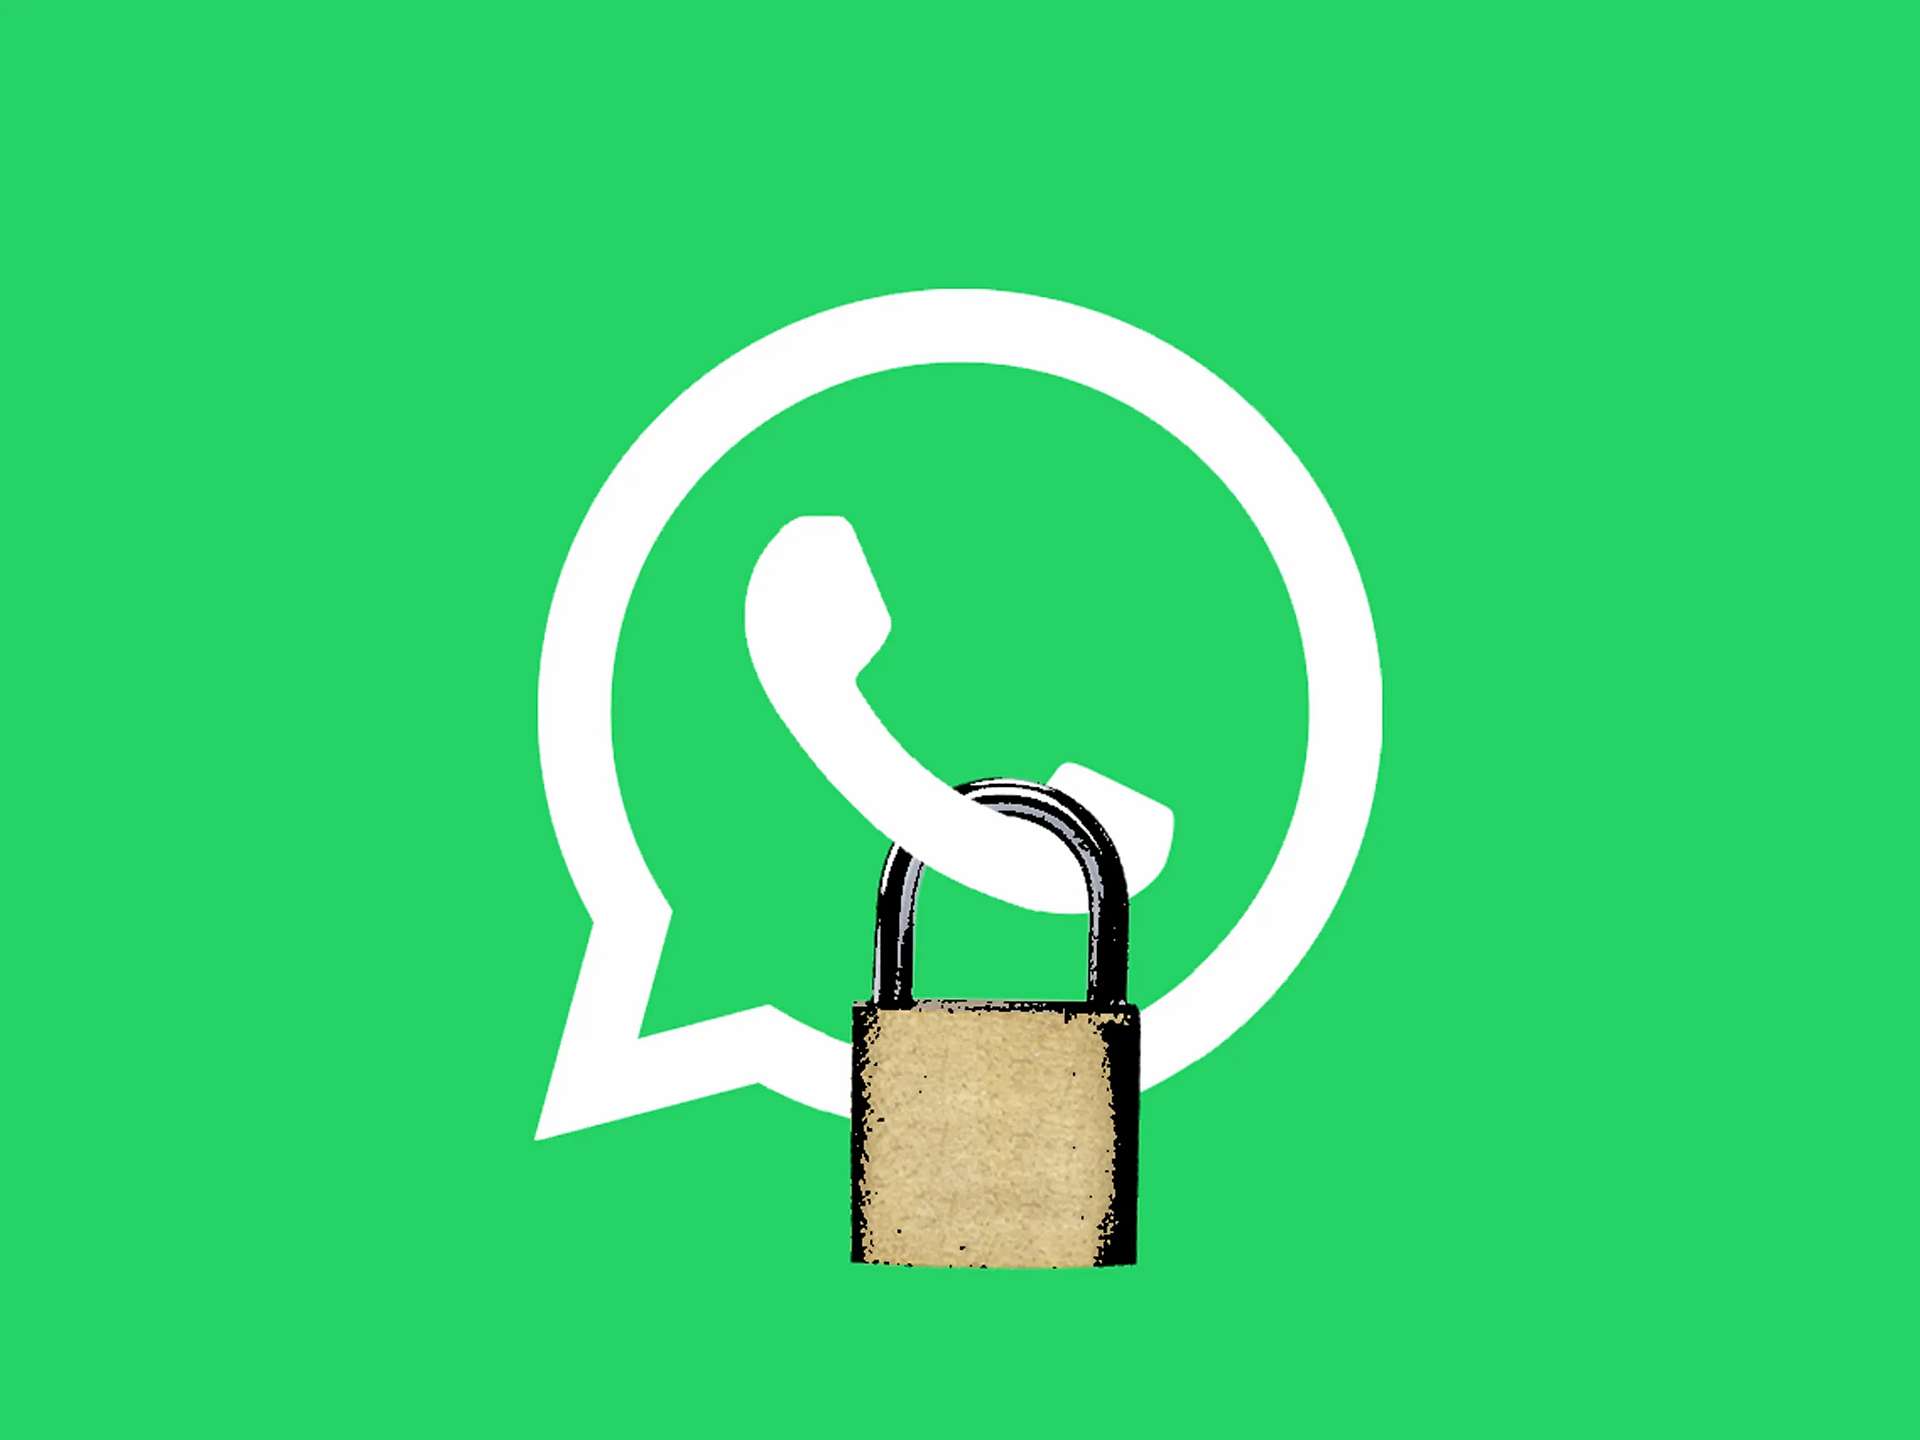 Как скрыть последнее посещение в WhatsApp для одного человека?